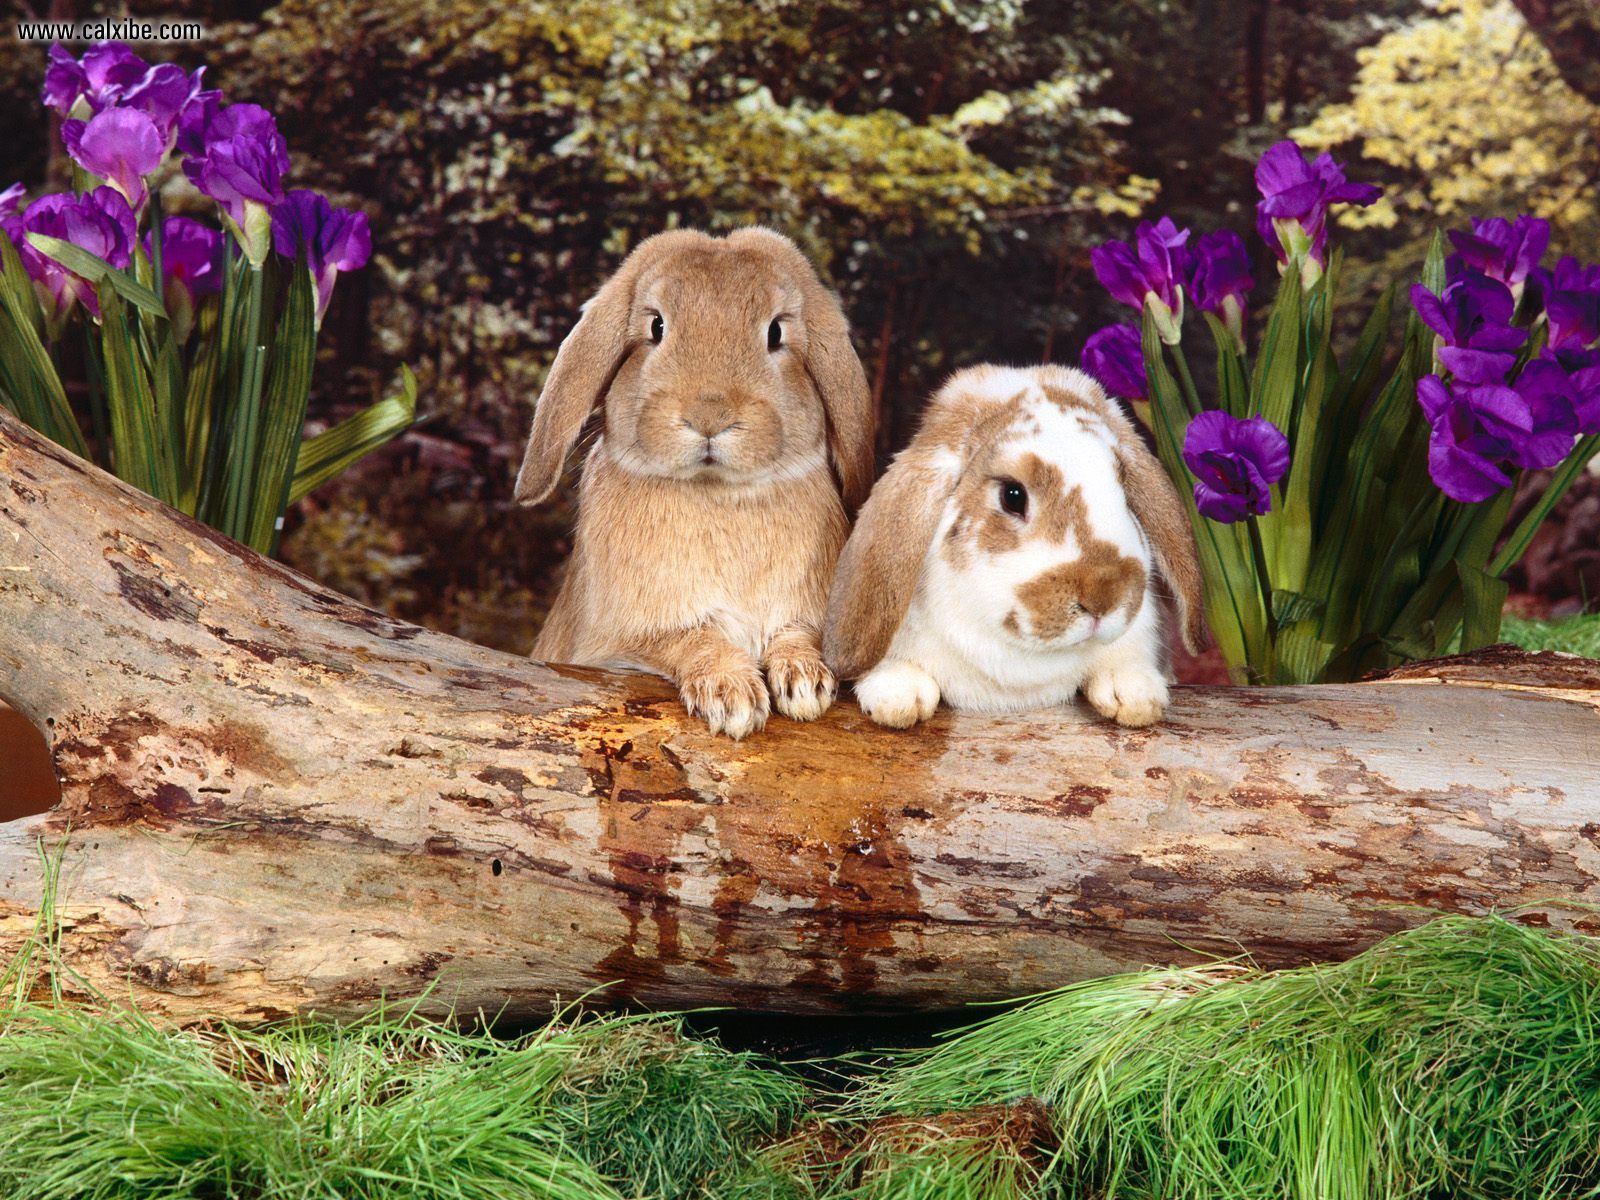 Скачать обои бесплатно Животные, Кролик, Милые картинка на рабочий стол ПК